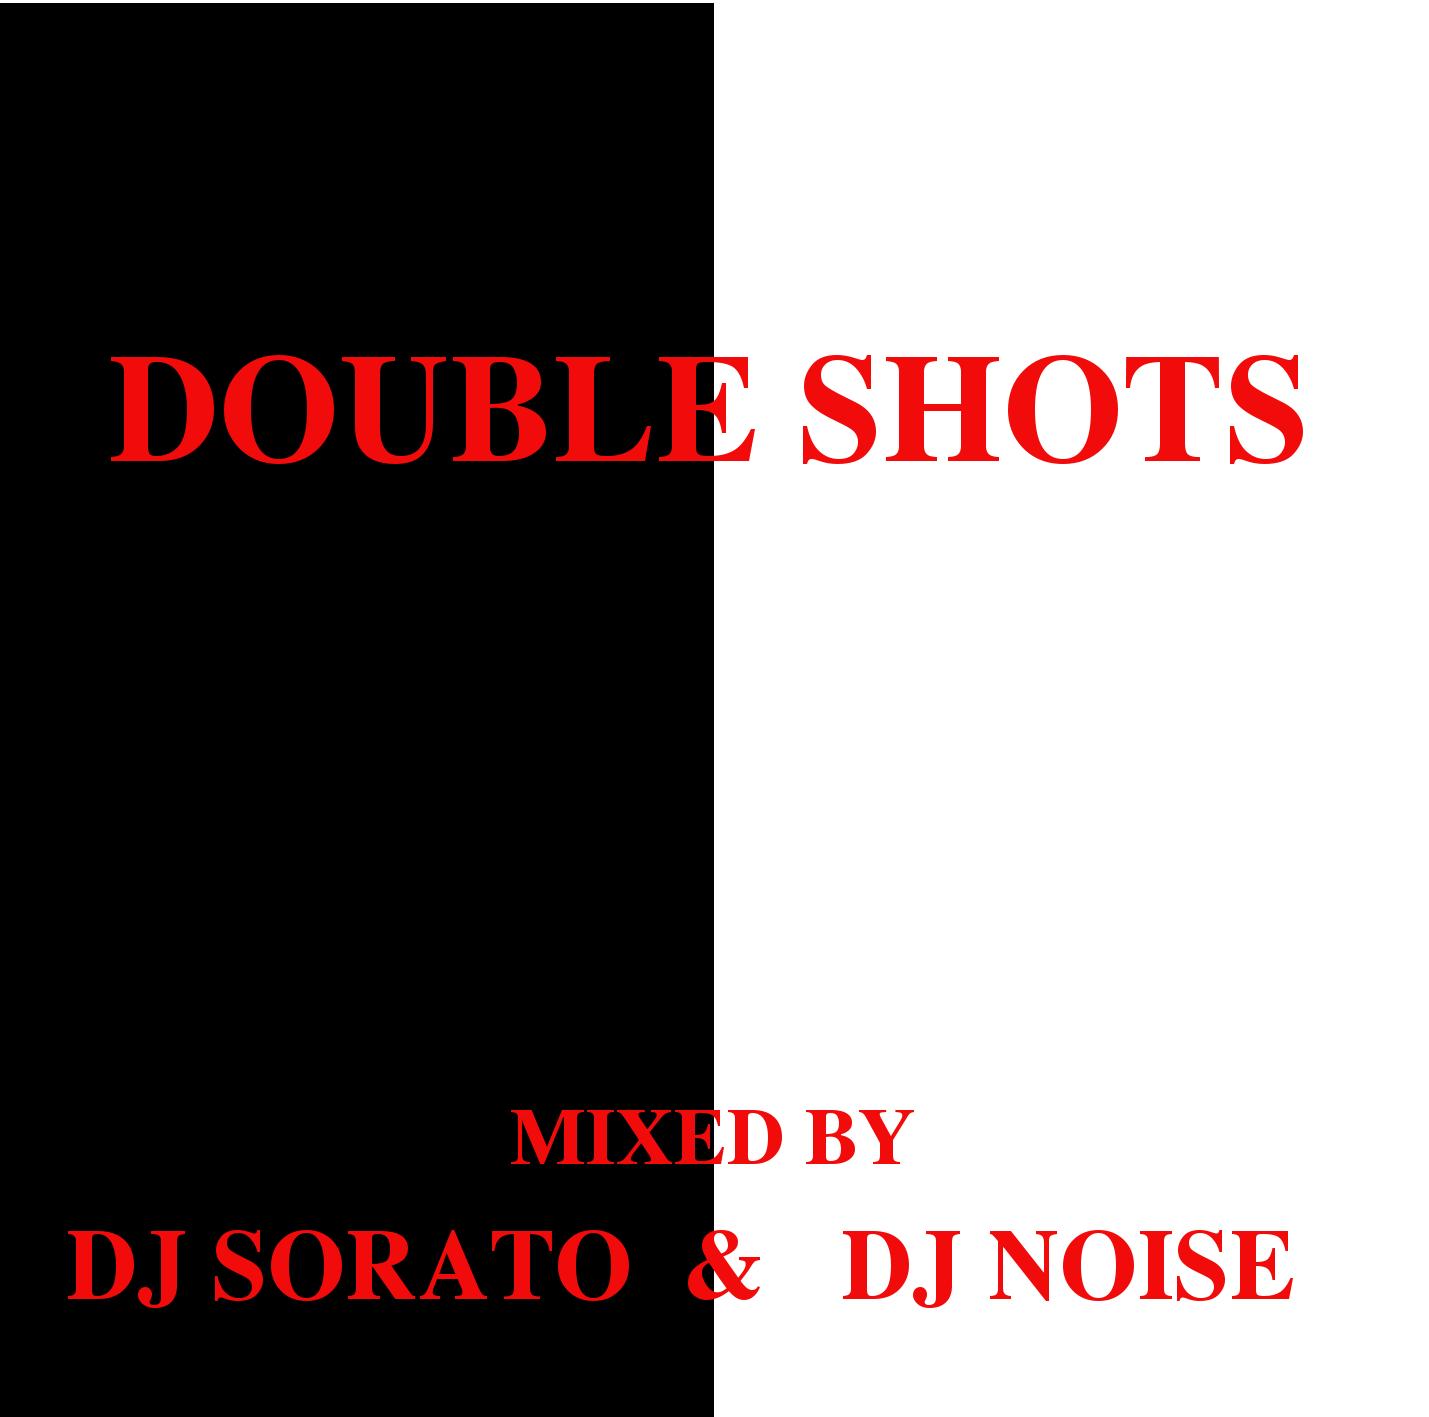 DOUBLE SHOTS - Mixed by DJ SORATO & DJ NOISE